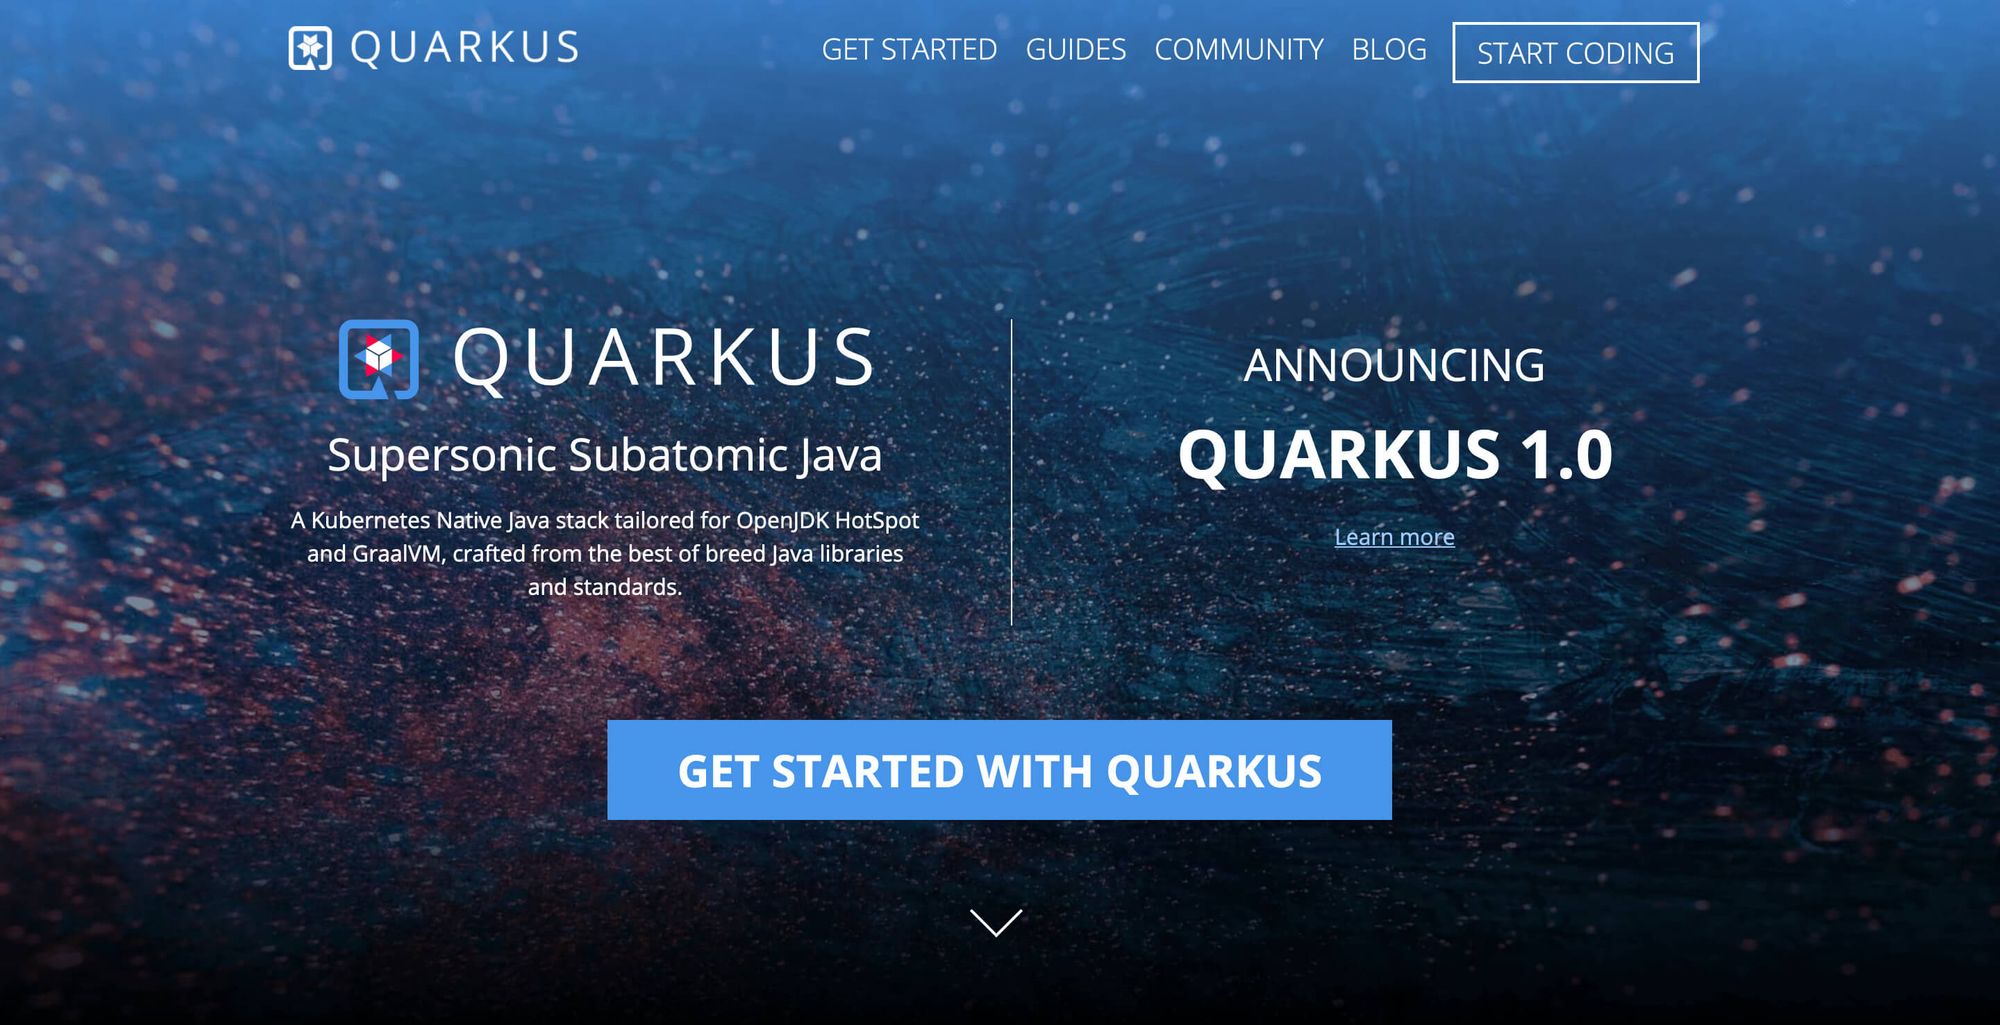 Quarkus - Develop Your First Supersonic Enterprise Java Application